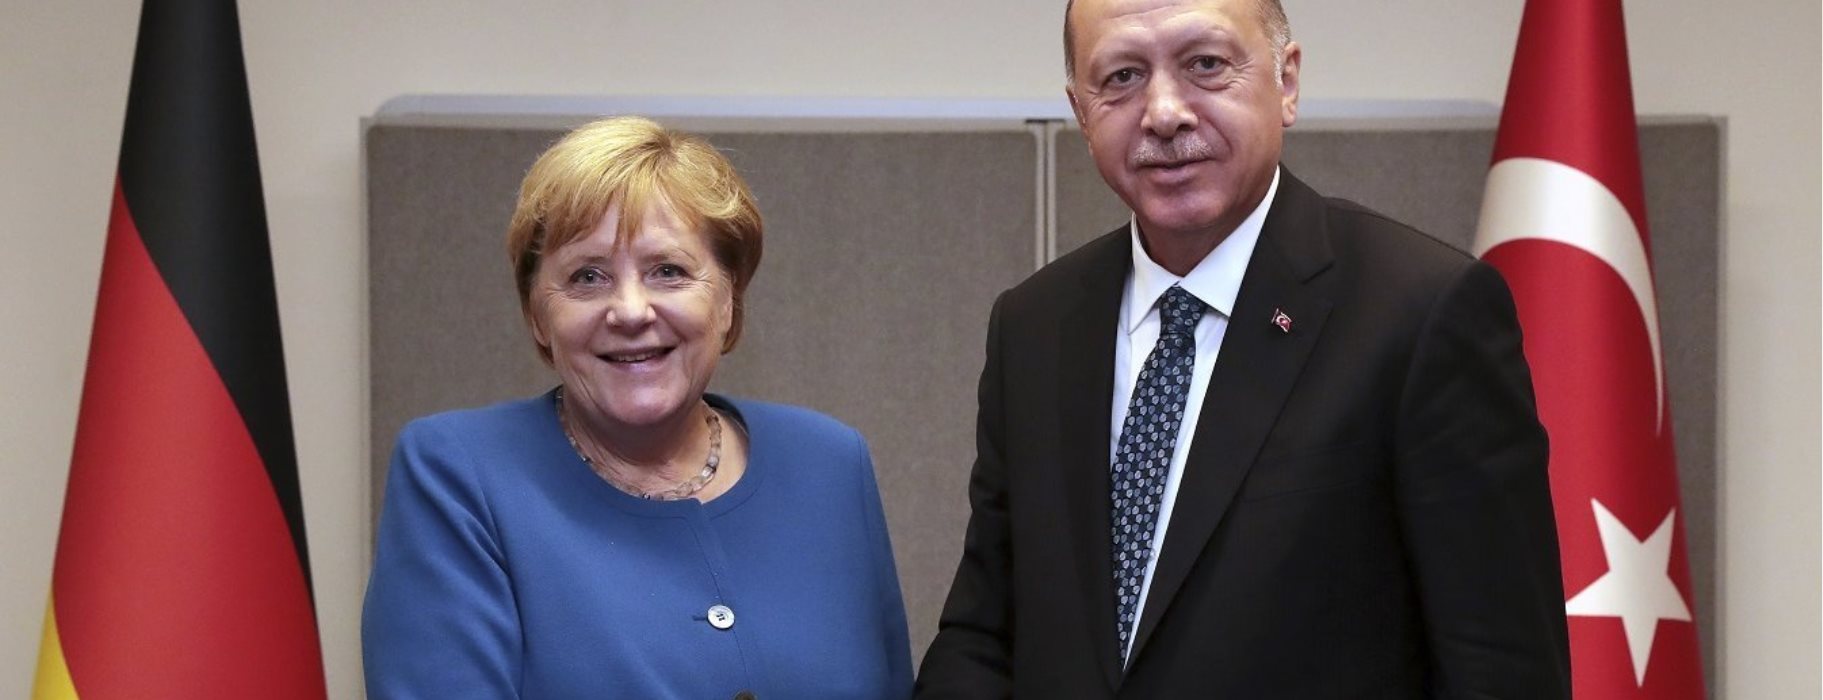 Βερολίνο σε Κύπρο: «Ξεχάστε τις κυρώσεις στην Τουρκία – Δεν πρόκειται να επιβληθούν»!